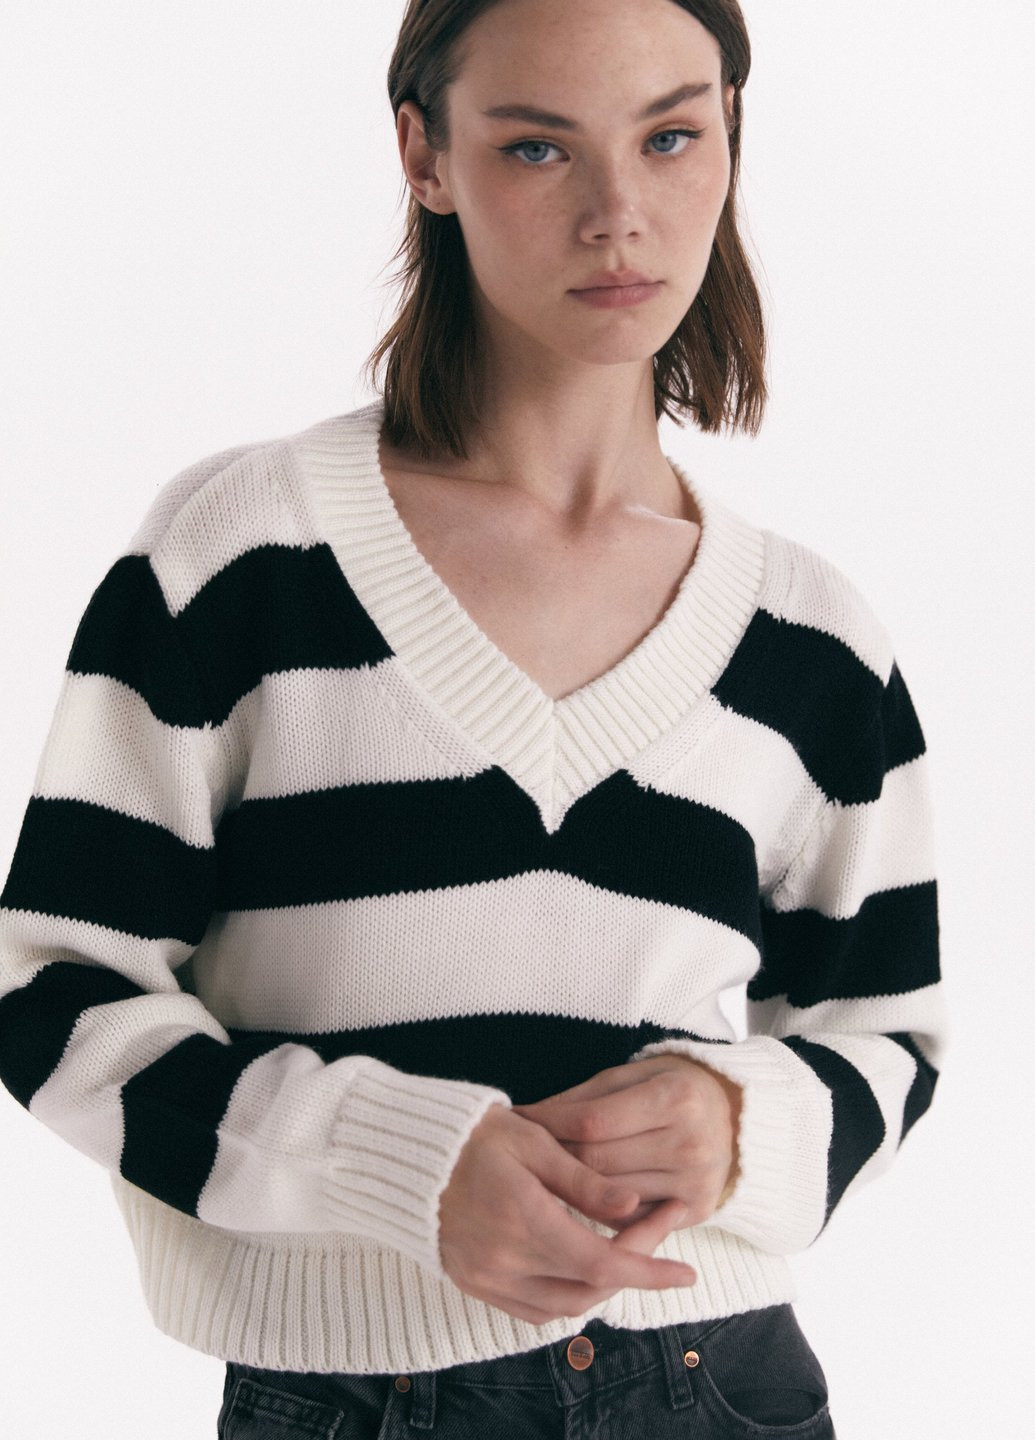 Черно-белый демисезонный пуловер пуловер Gepur